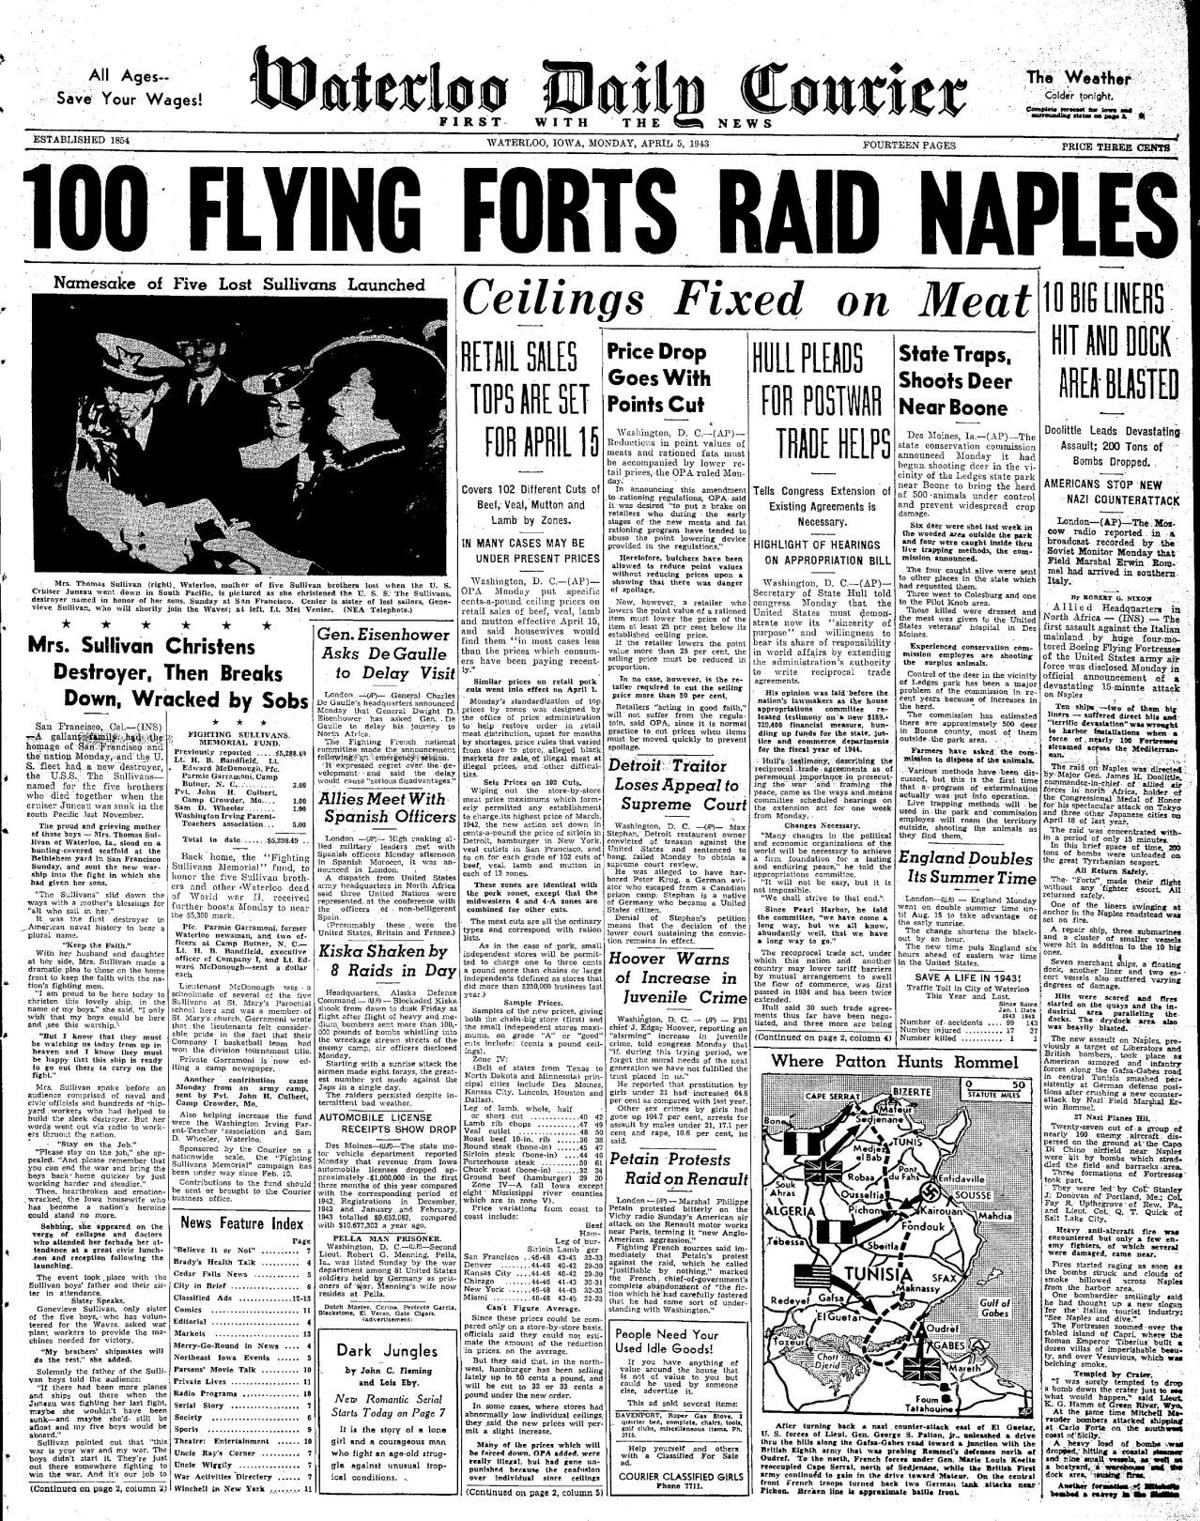 Courier April 5, 1943